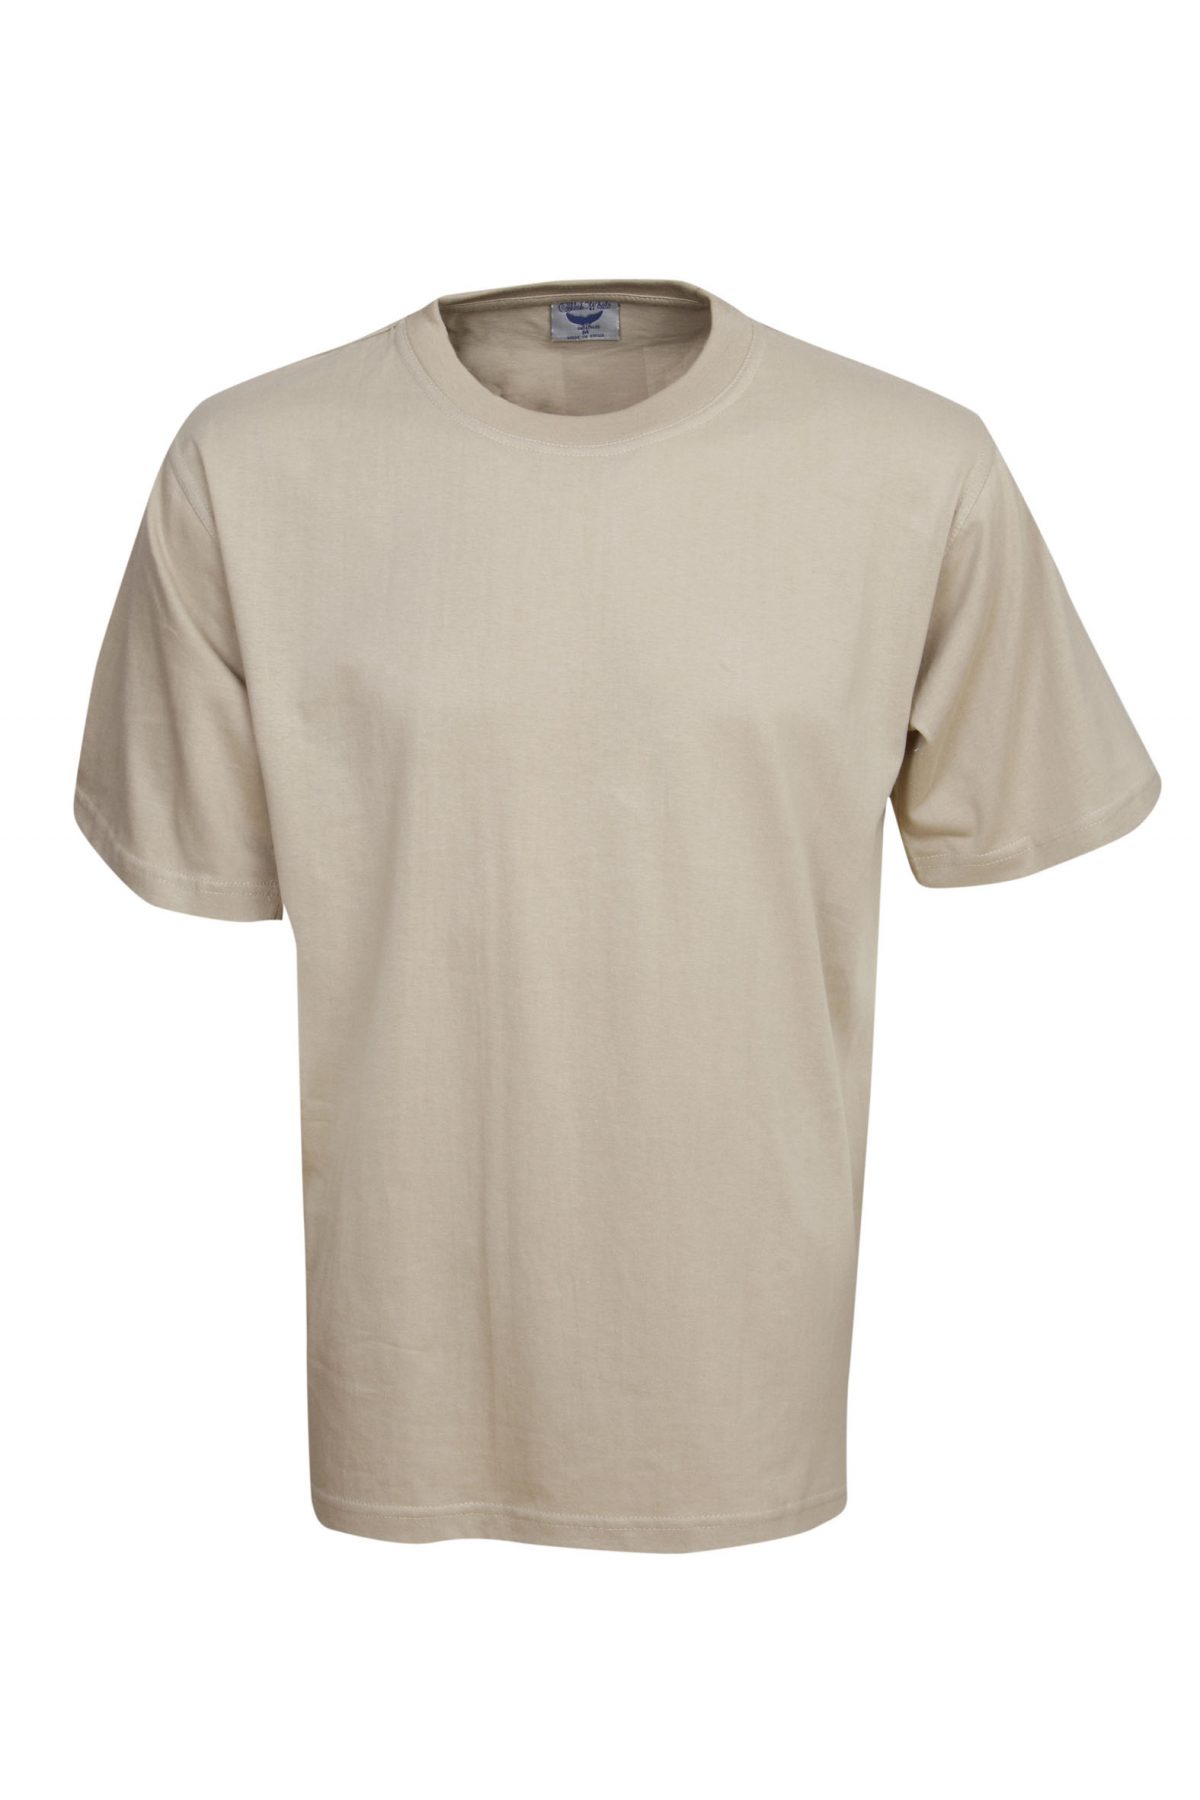 T04 Premium Pre-Shrunk Cotton T-Shirt - Blue Whale